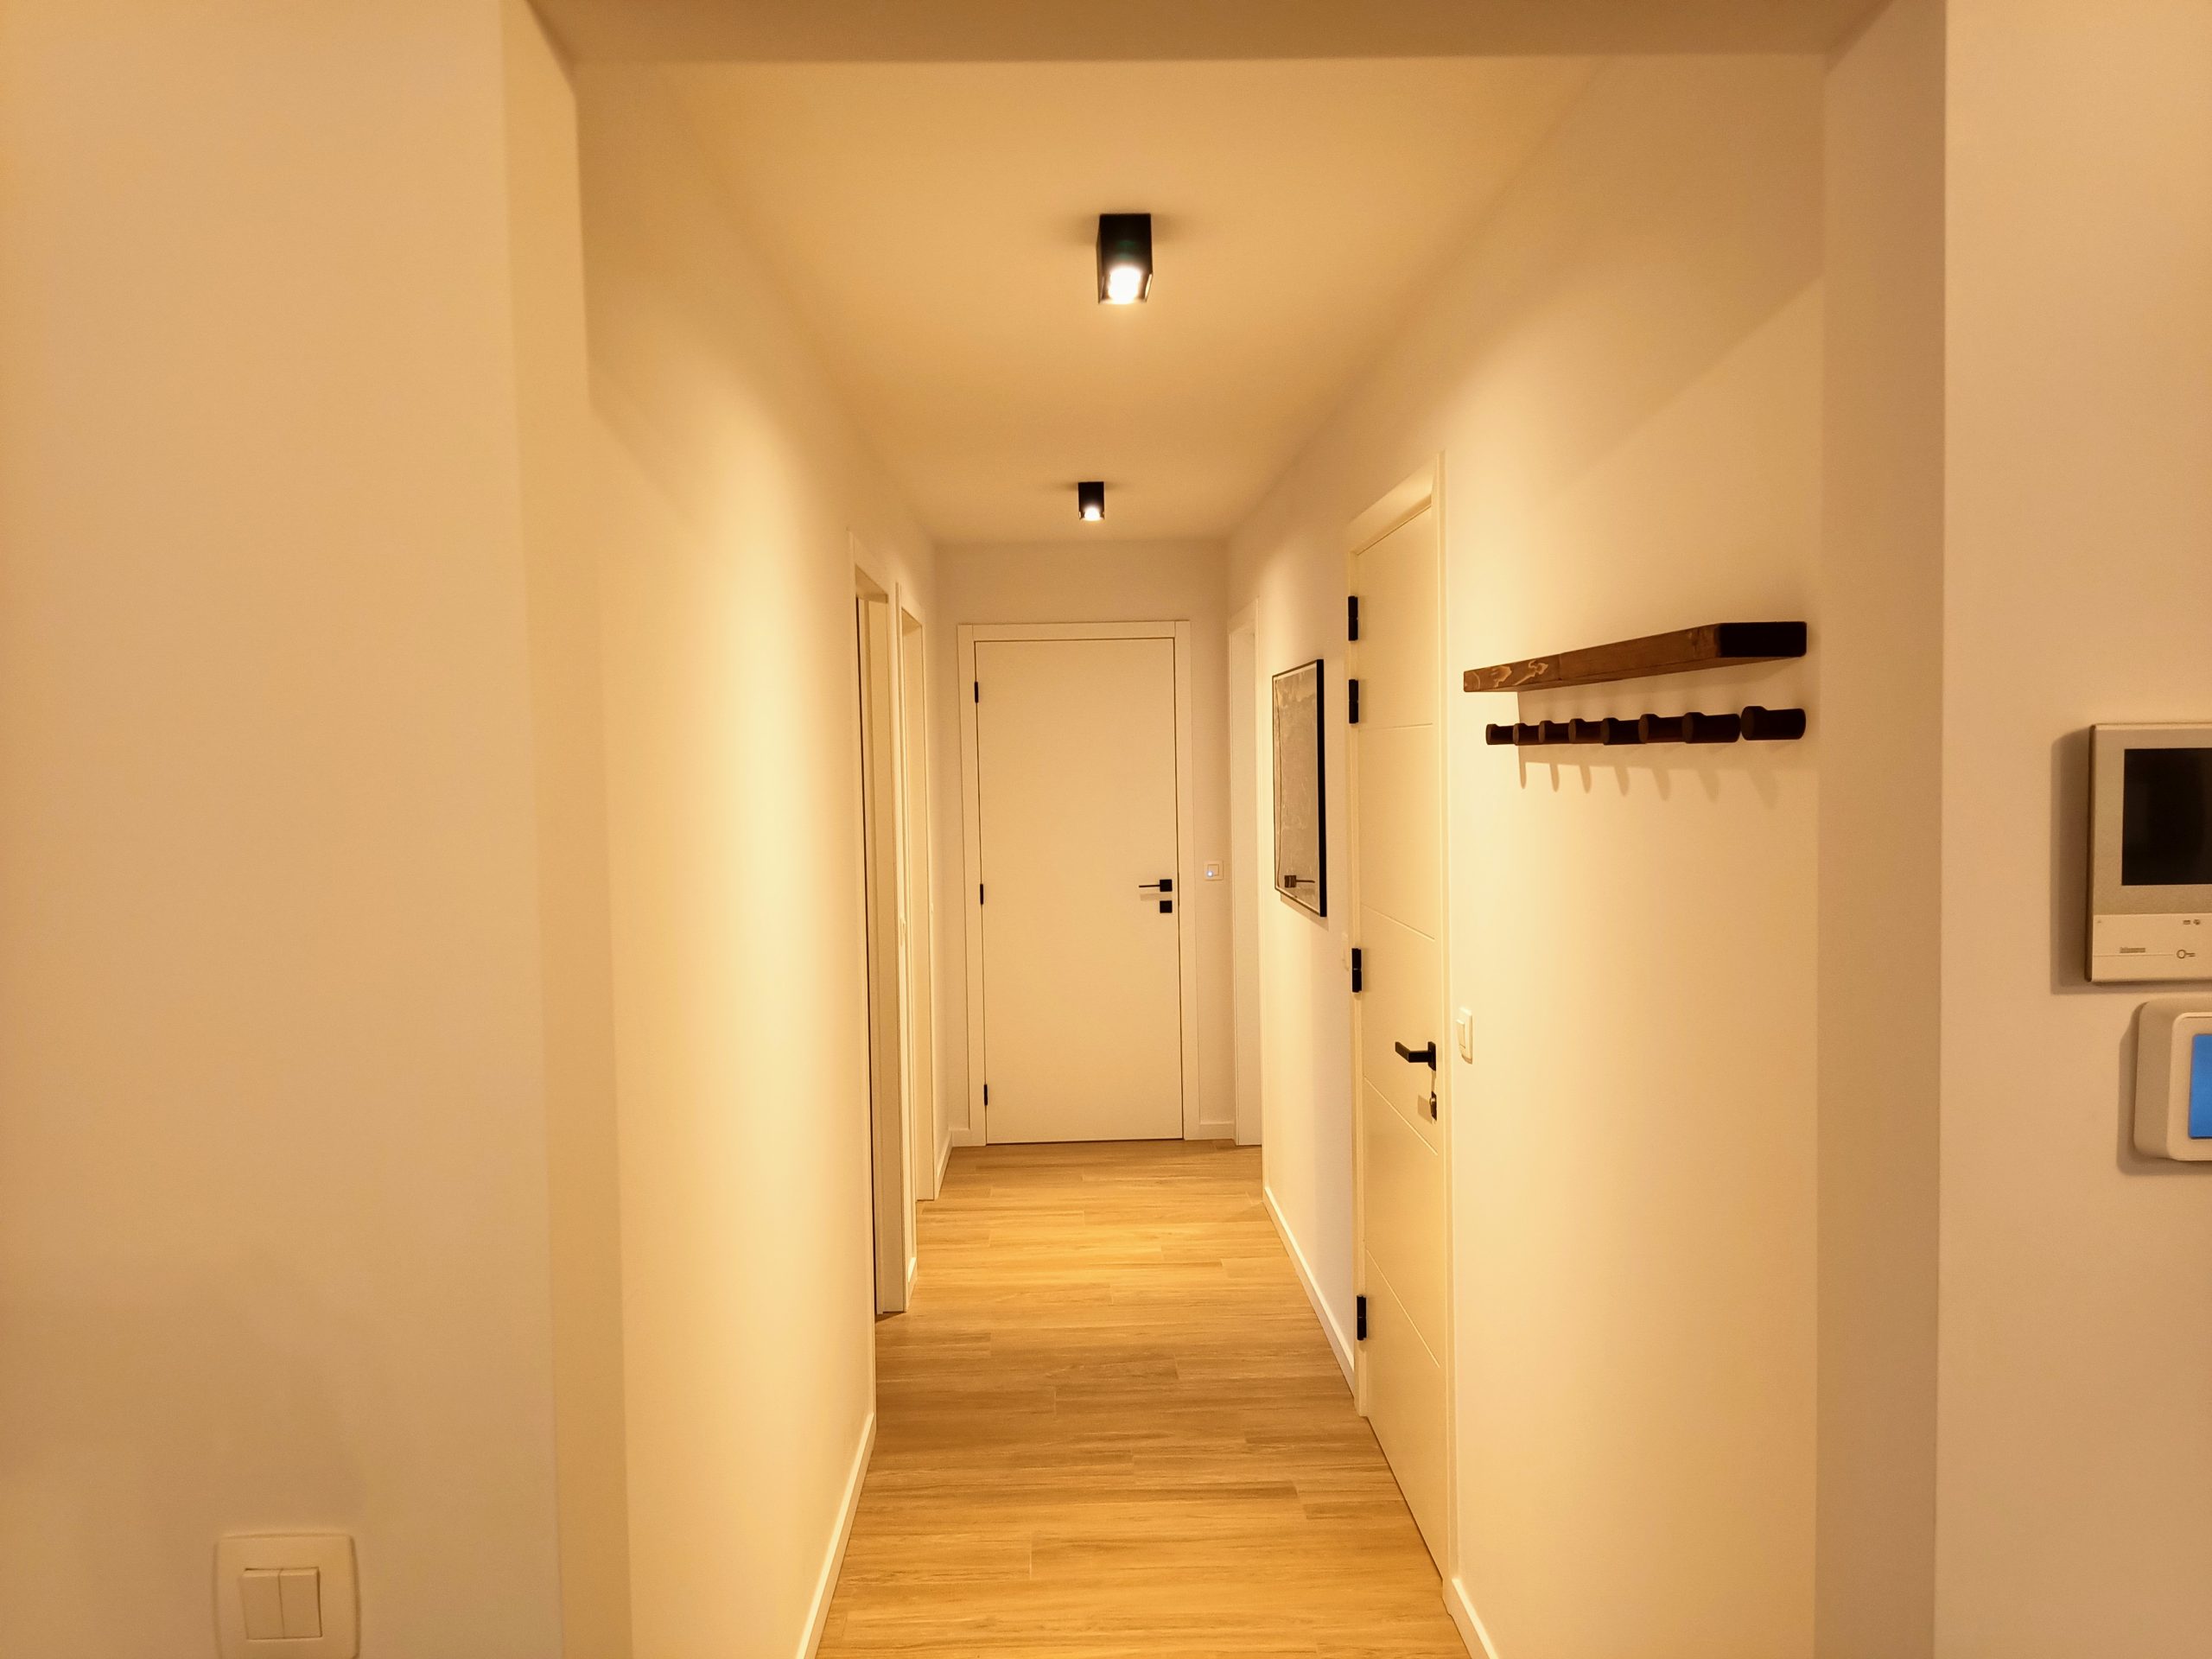 Salvatore - 2 Bedrooms apartment for rent in Ghent corridor 2